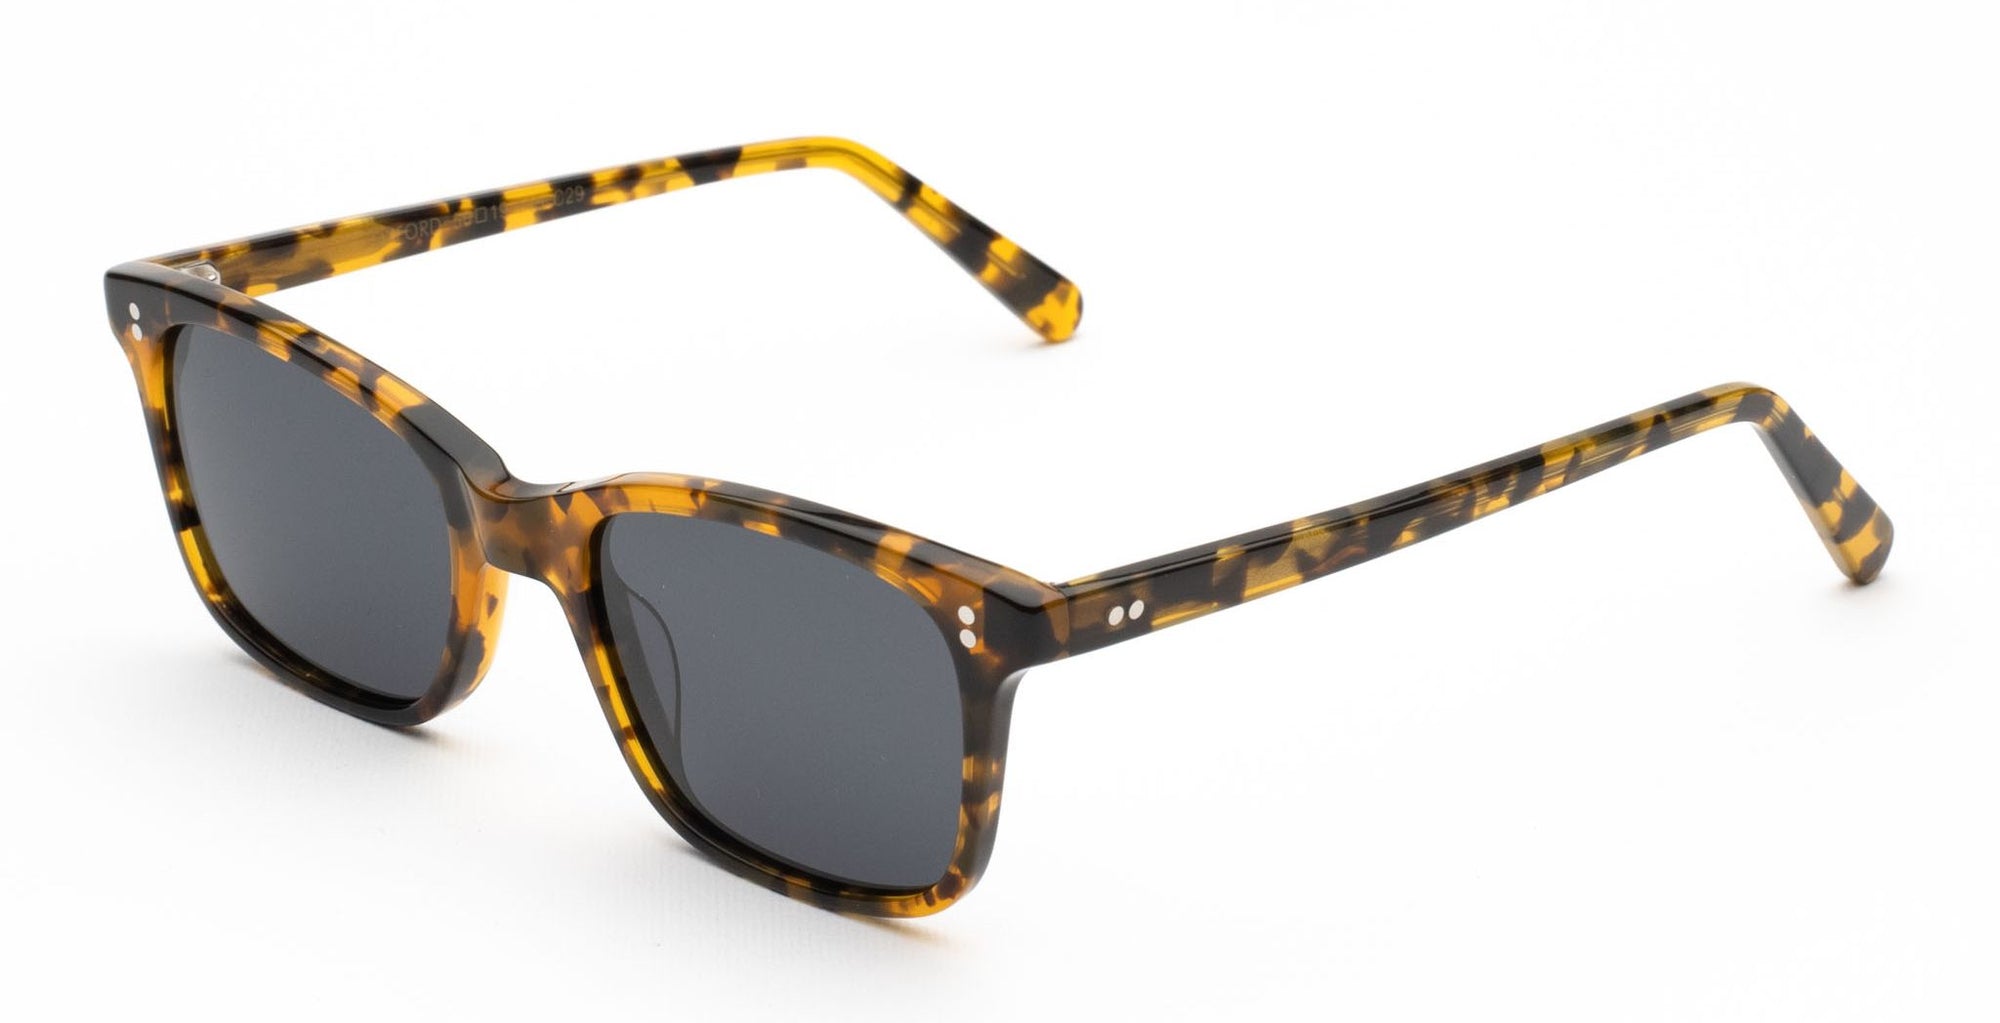 Randolph Hamilton Sunglasses Models HN000, HN001, HN002 - Flight Sunglasses